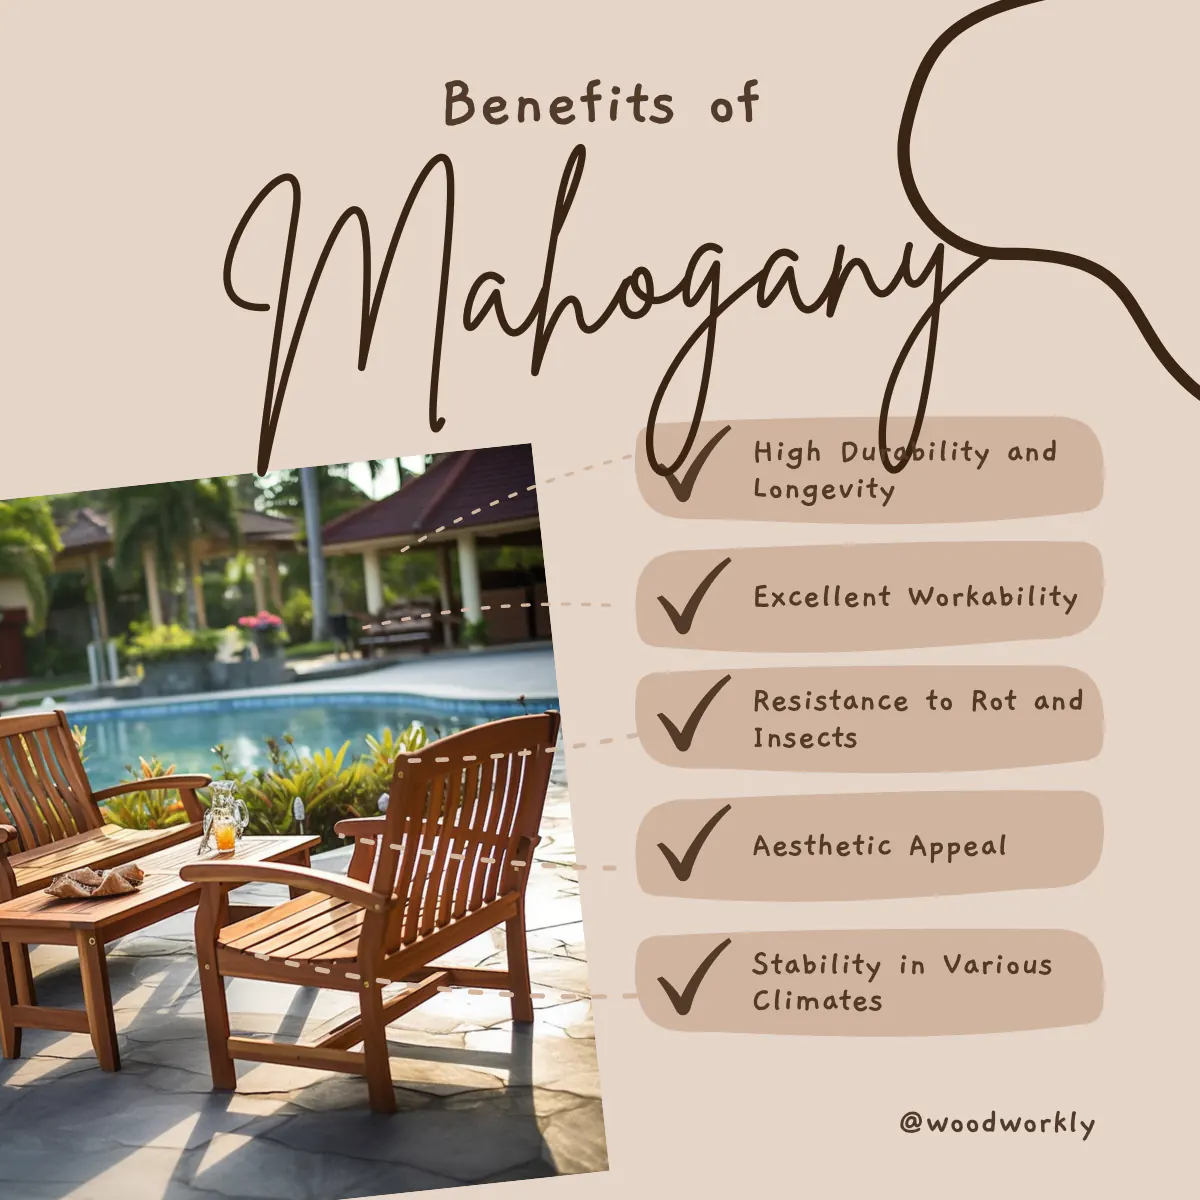 Benefits of mahogany